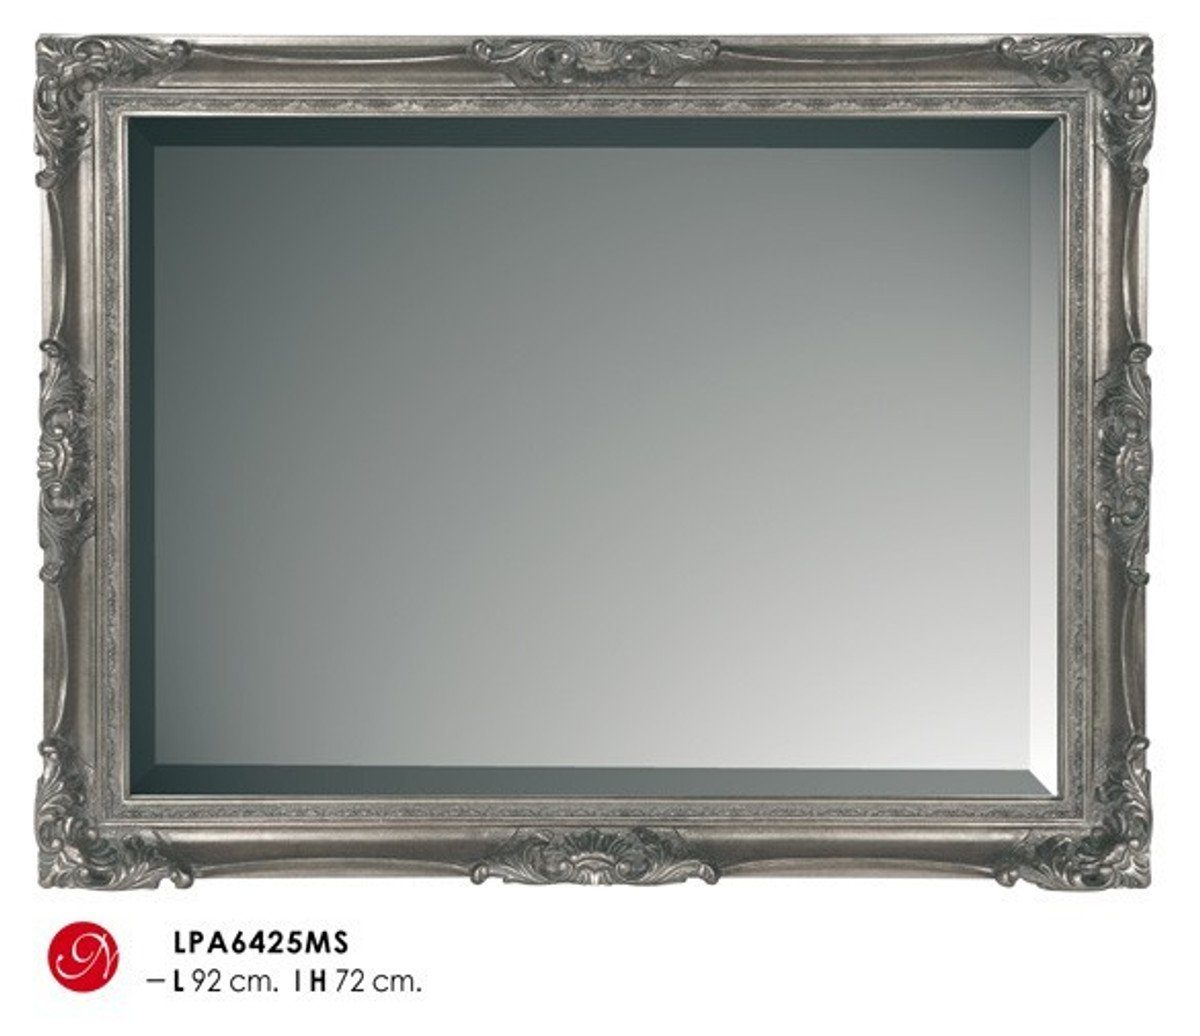 Casa Padrino Barockspiegel Barock Wandspiegel Silber H 92 cm B 72 cm - Edel & Prunkvoll - Spiegel Silberfarben